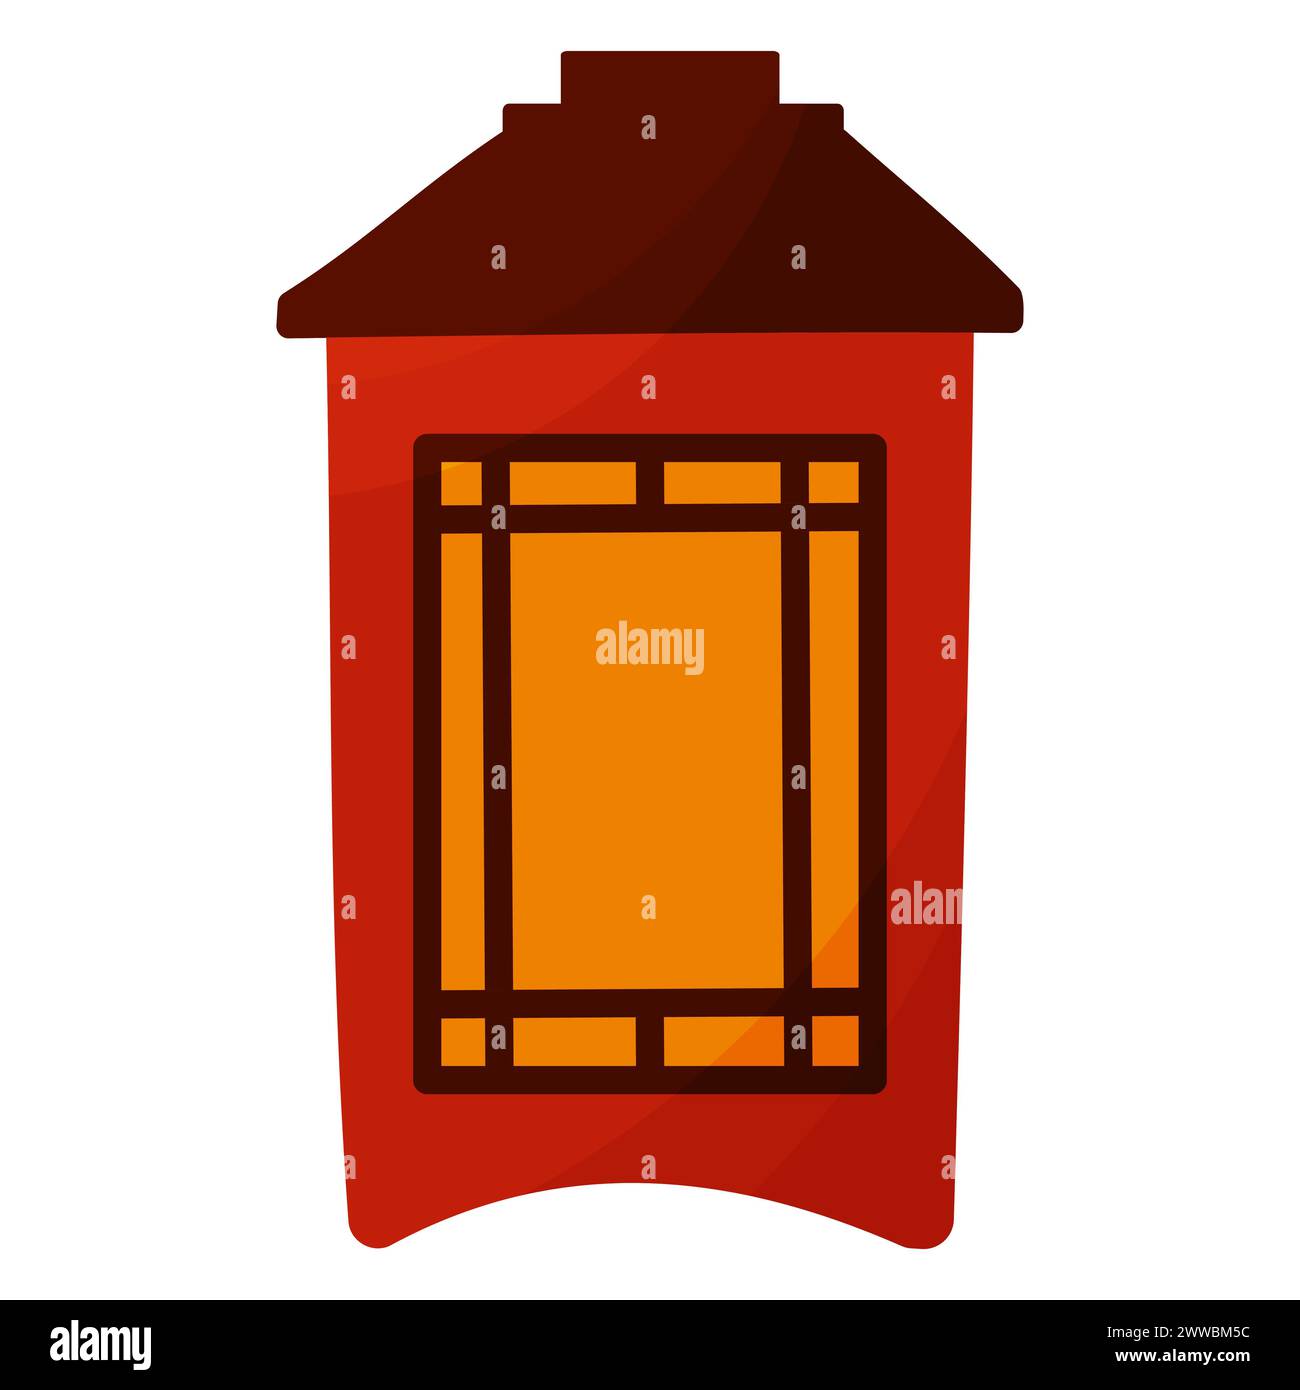 Lanterne chinoise traditionnelle en bois. Icône asiatique colorée de la lampe. Éclairage de rue festif. Illustration vectorielle dessinée à la main. Un symbole simple. Illustration de Vecteur